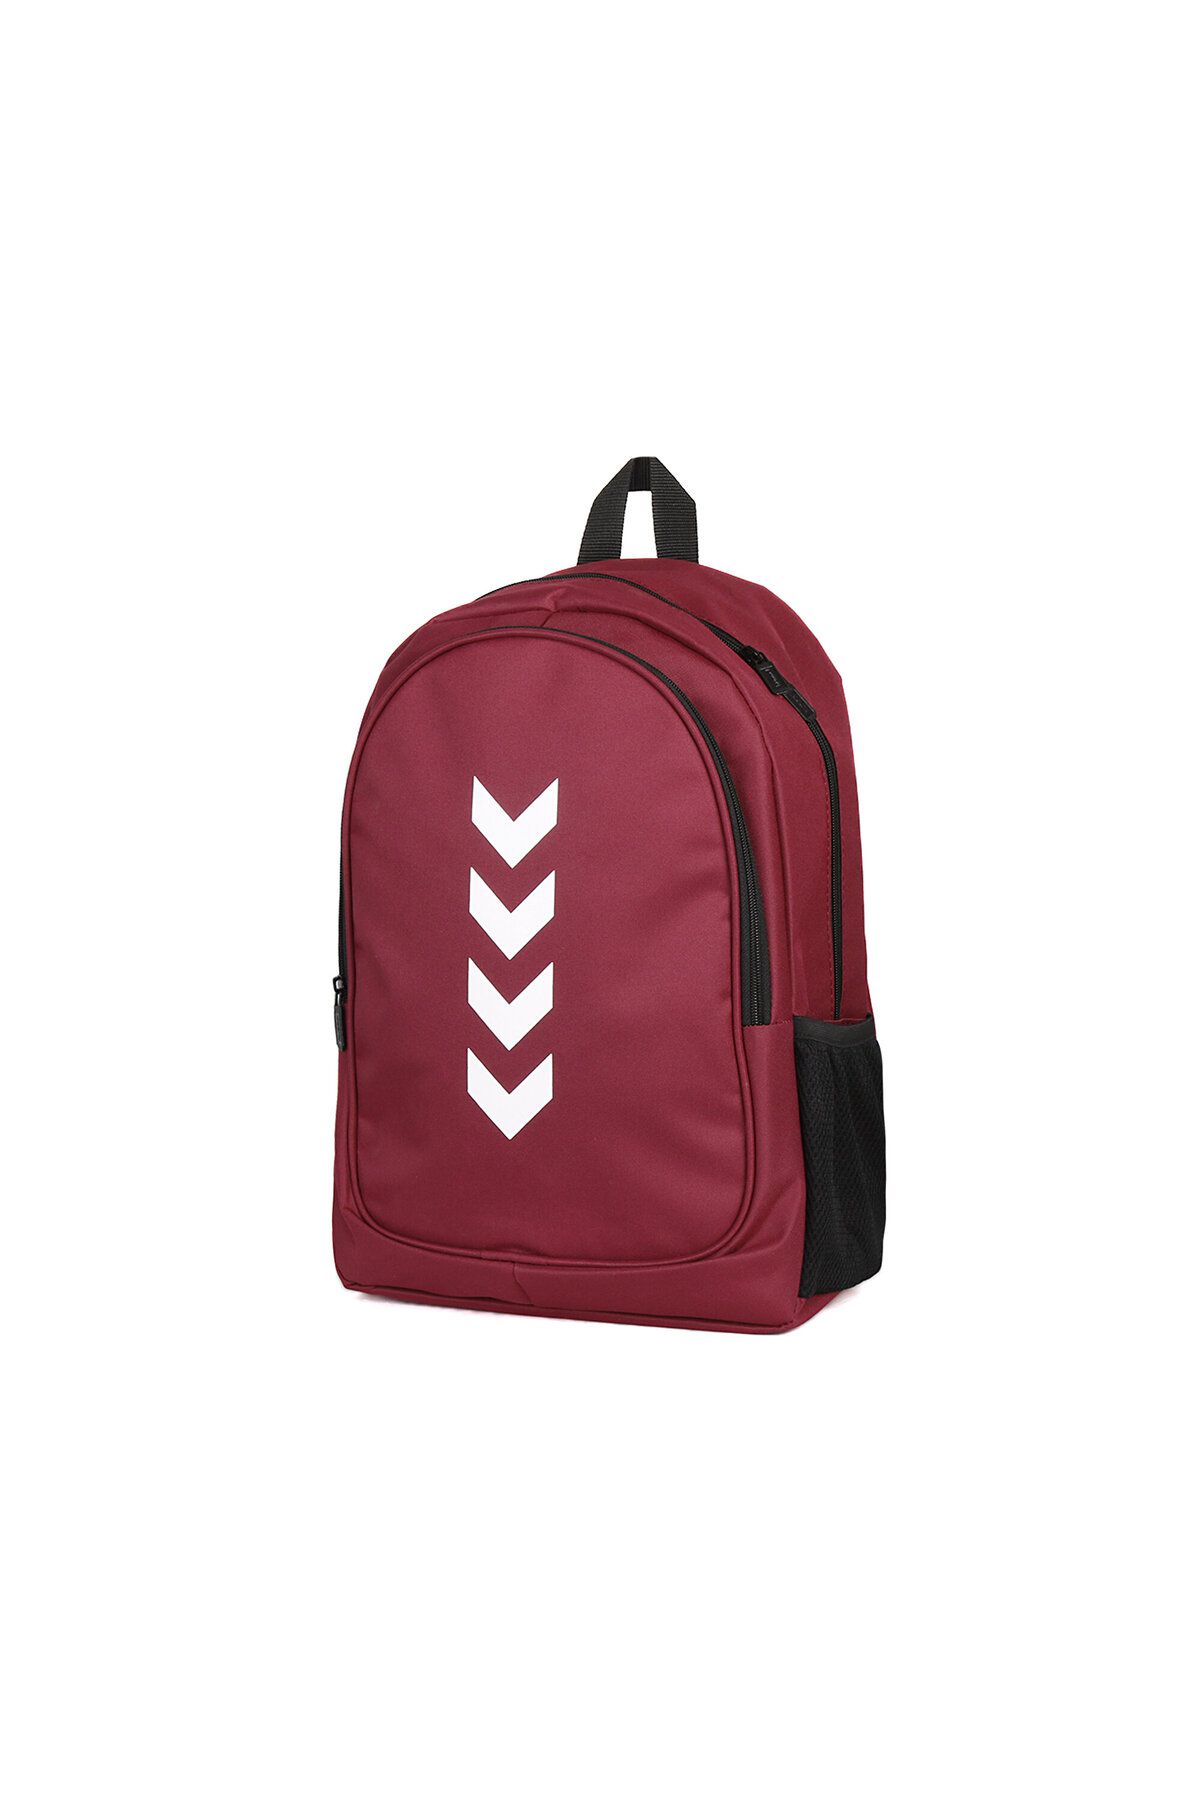 hummel Backpack Günlük Kullanıma Uygun Sırt Ve Okul Çantası Ilkokul Ortaokul Lise Çantası